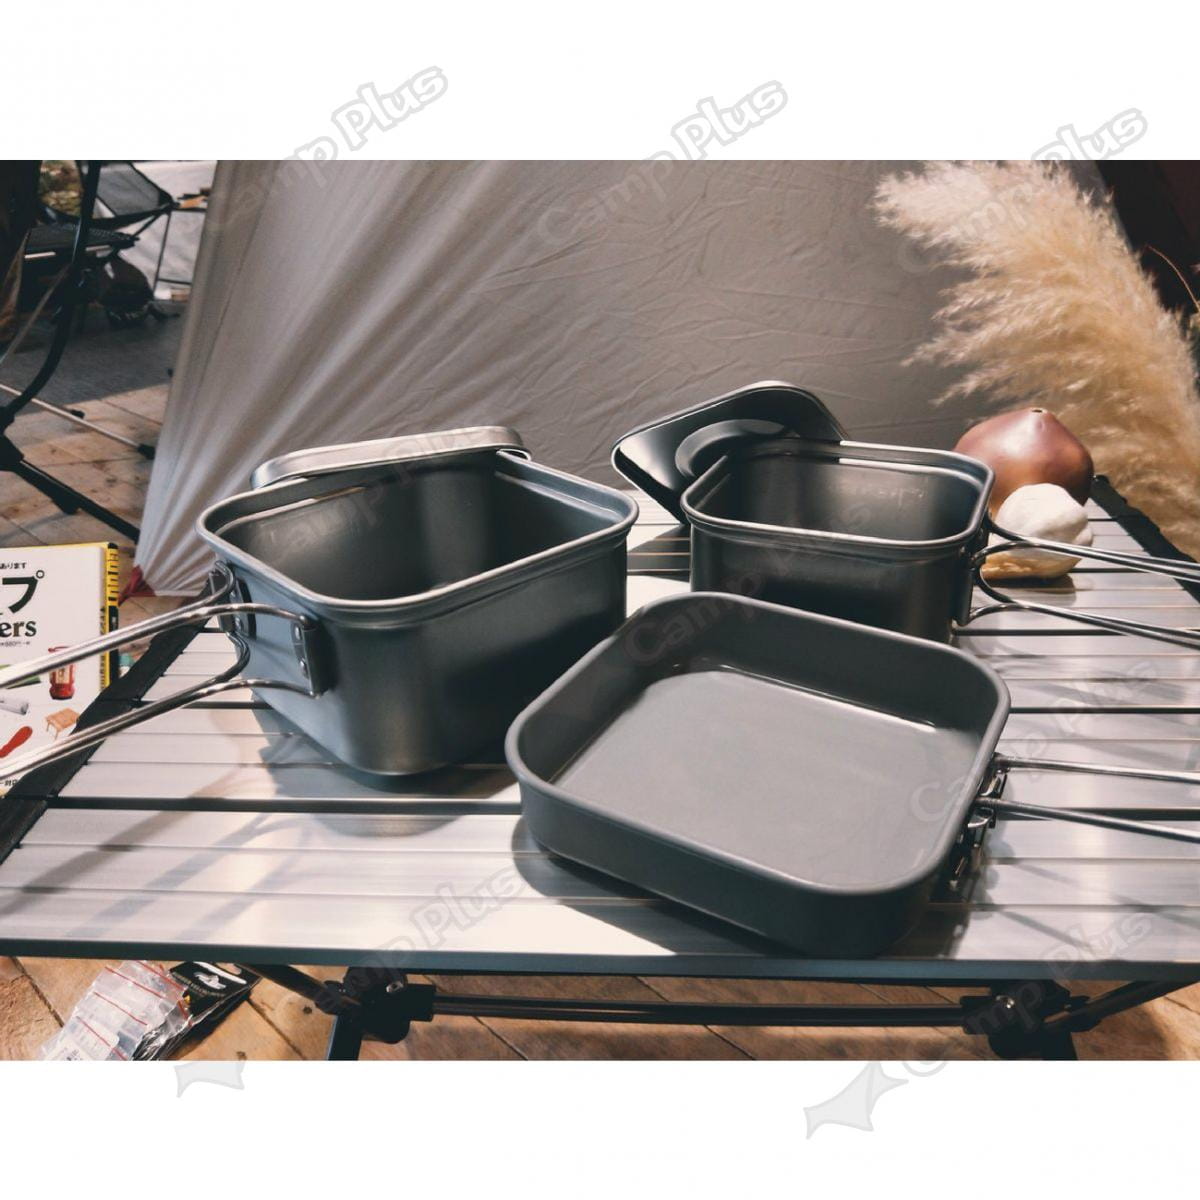 【日本 UNIFLAME】四方鍋三件組 U667705 方型鍋 便攜鍋具 居家 露營 悠遊戶外 6